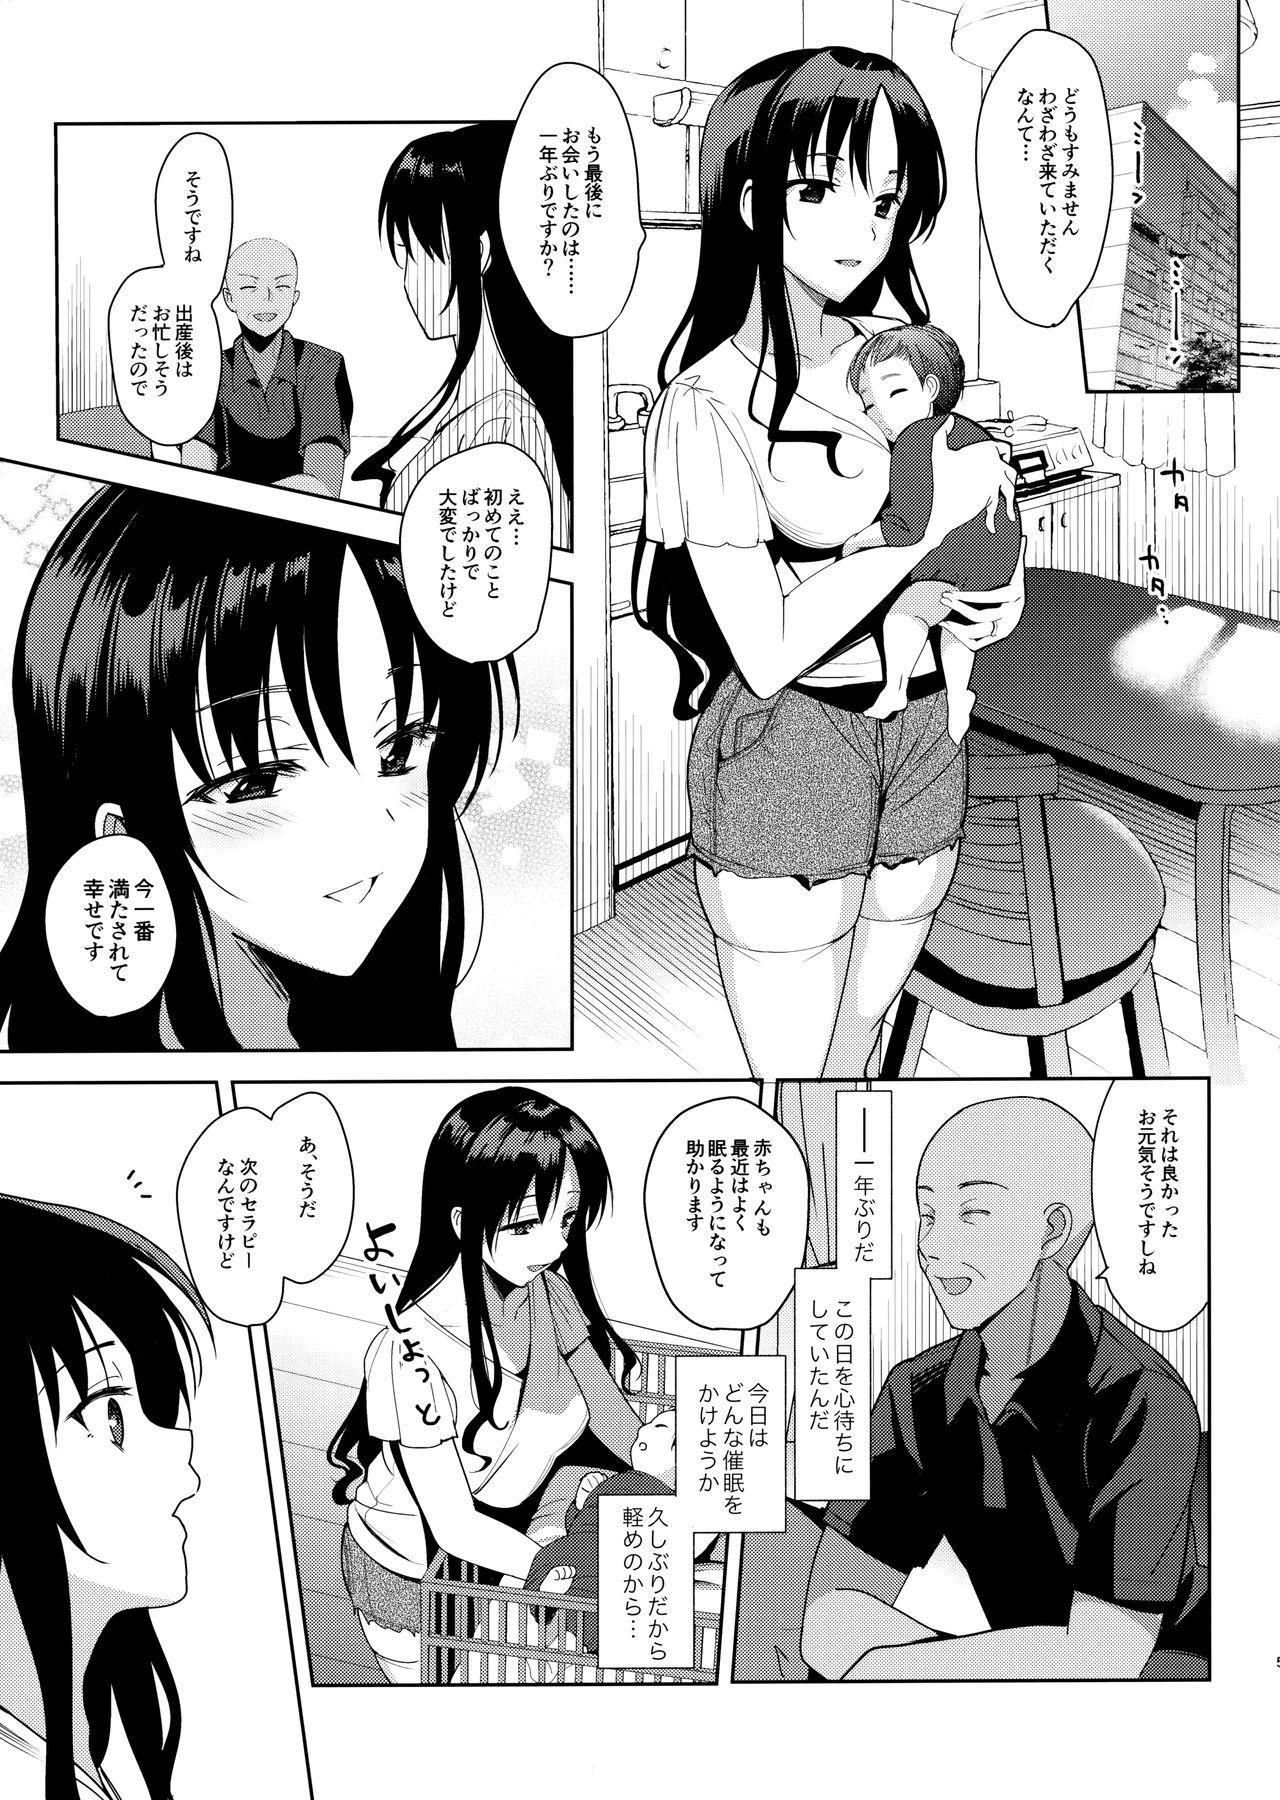 Cachonda Mesmerism 6 + Mesmerism x Kusakabe Yuiko - Original Cums - Page 4